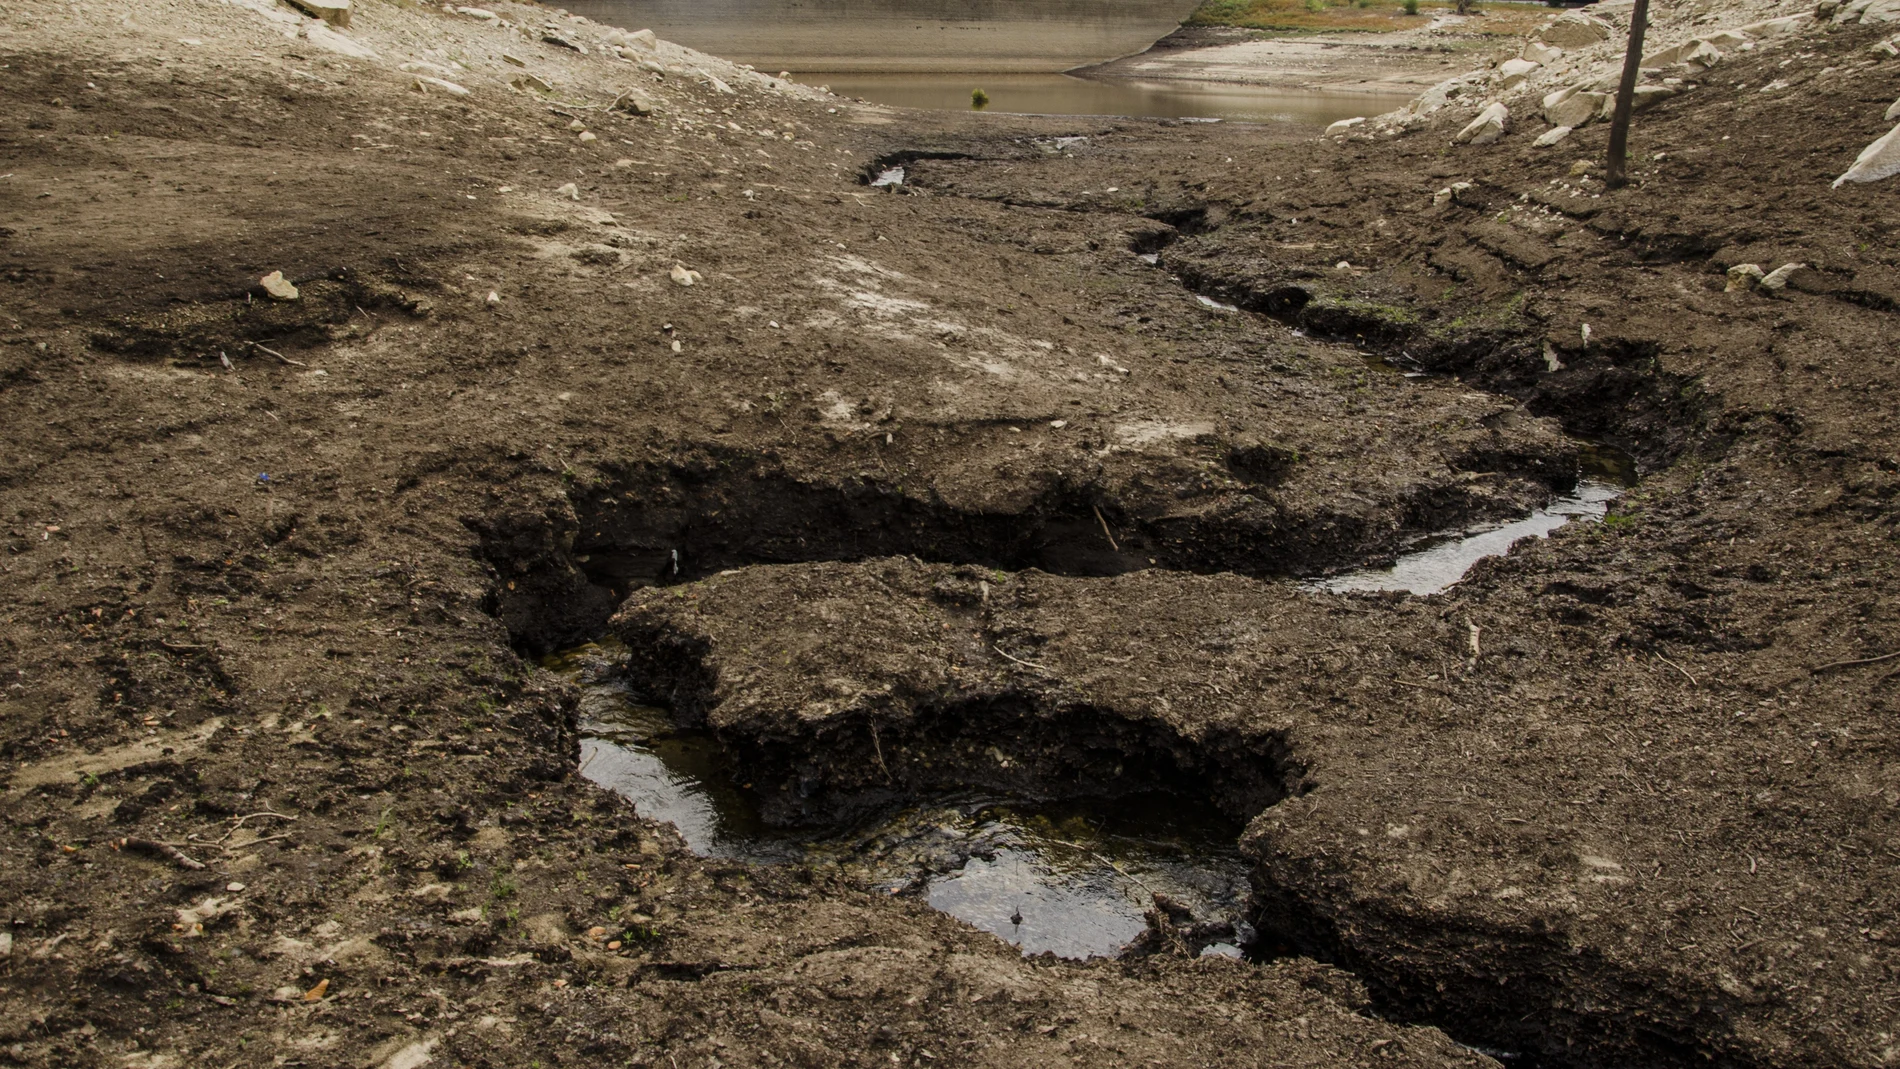 El pantano de Santa Fe seco, en el parque natural del Montseny, afectado por la sequía